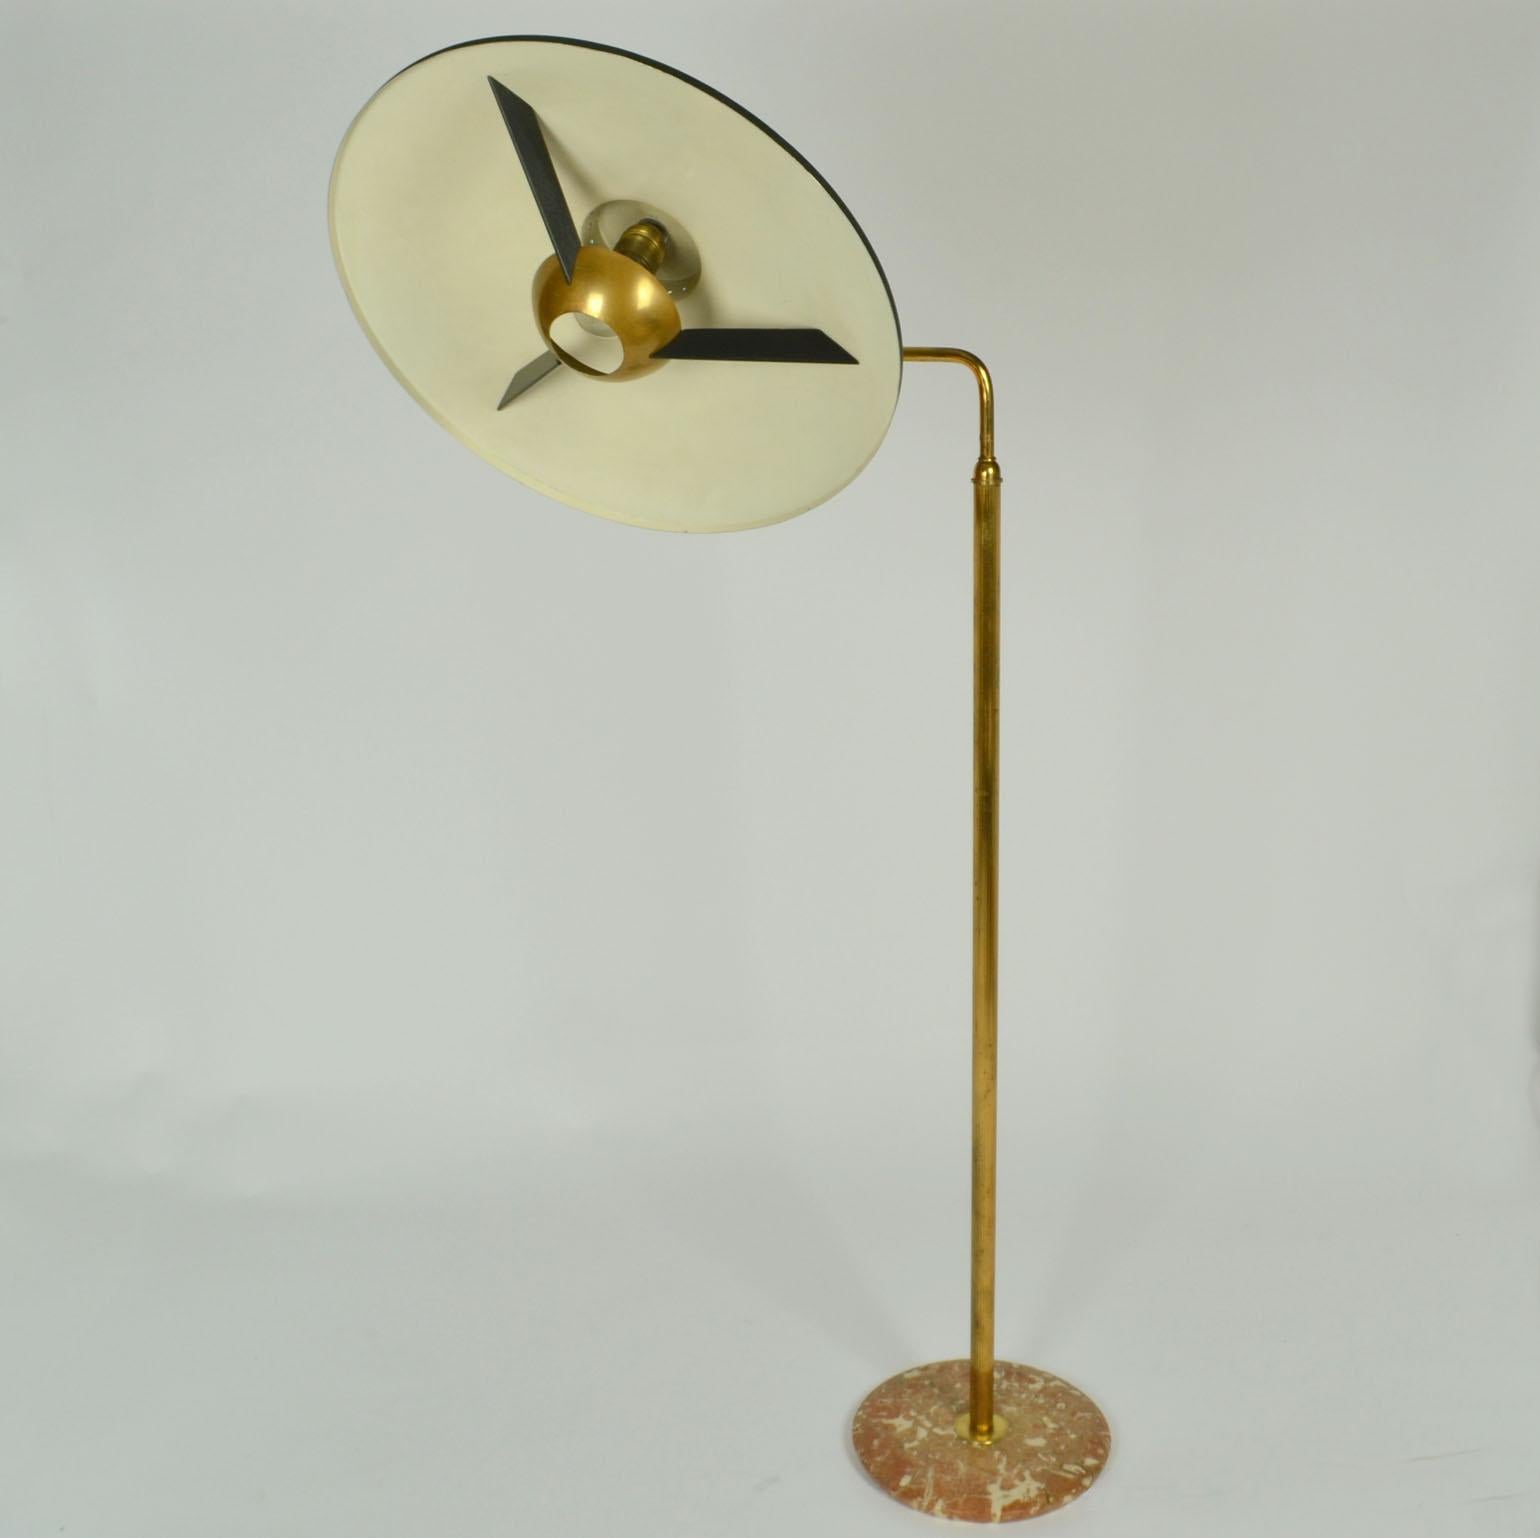 Italian Swing Arm Brass Floor Lamp, Original Black Shade, 1950's Stilnovo Style For Sale 5